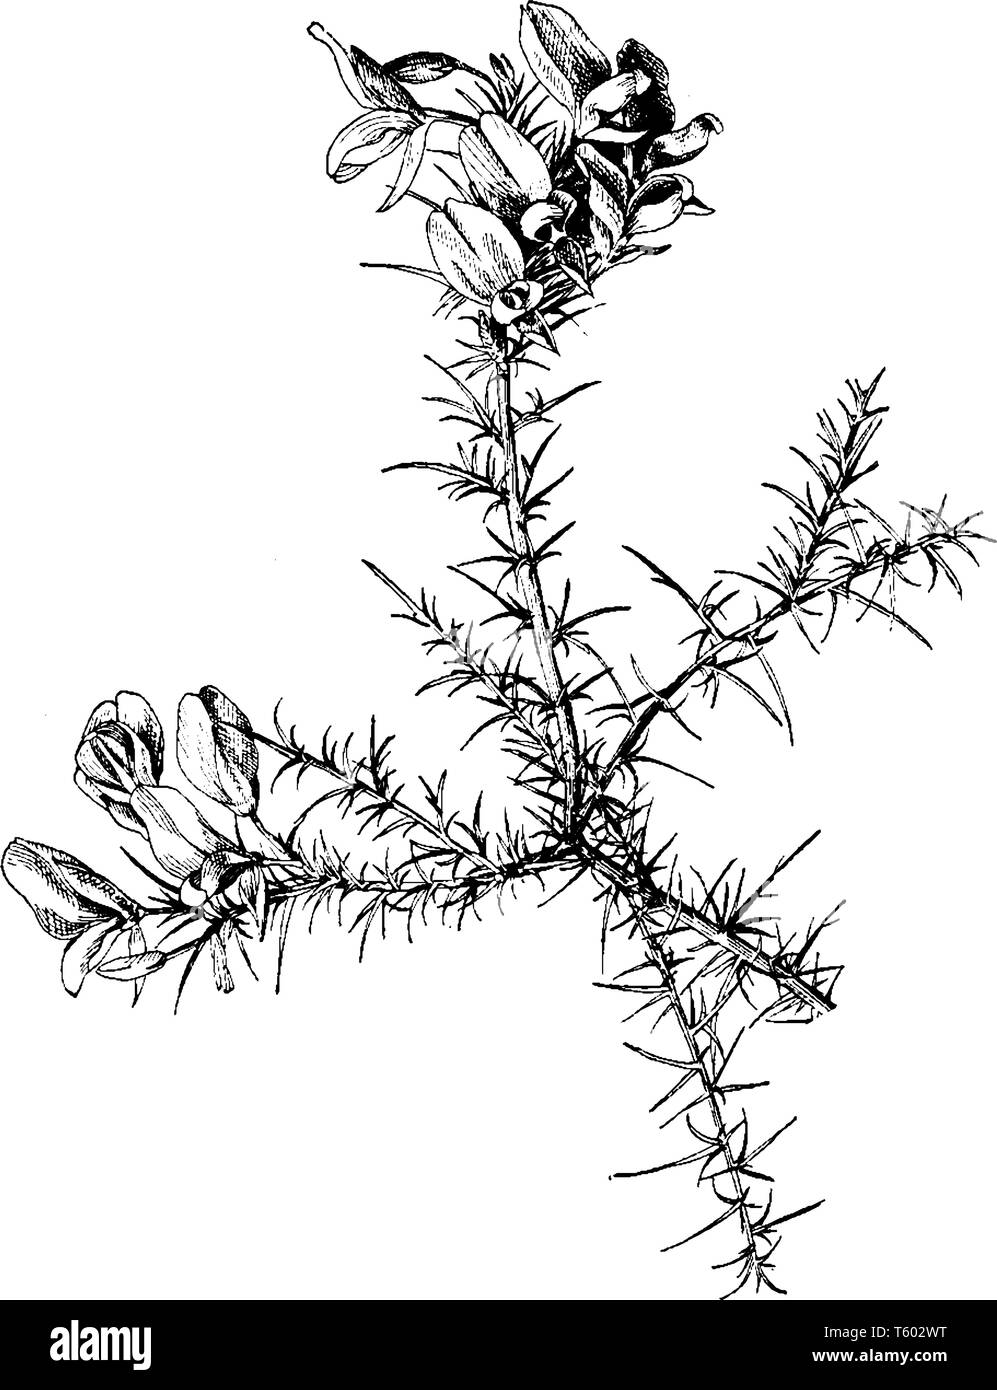 Una foto mostra Ulex Europaeus. Essa appartiene alla famiglia Fabaceae. È nativo per l'Europa. è un arbusto sempreverde. I fiori sono di colore giallo, vintage Illustrazione Vettoriale